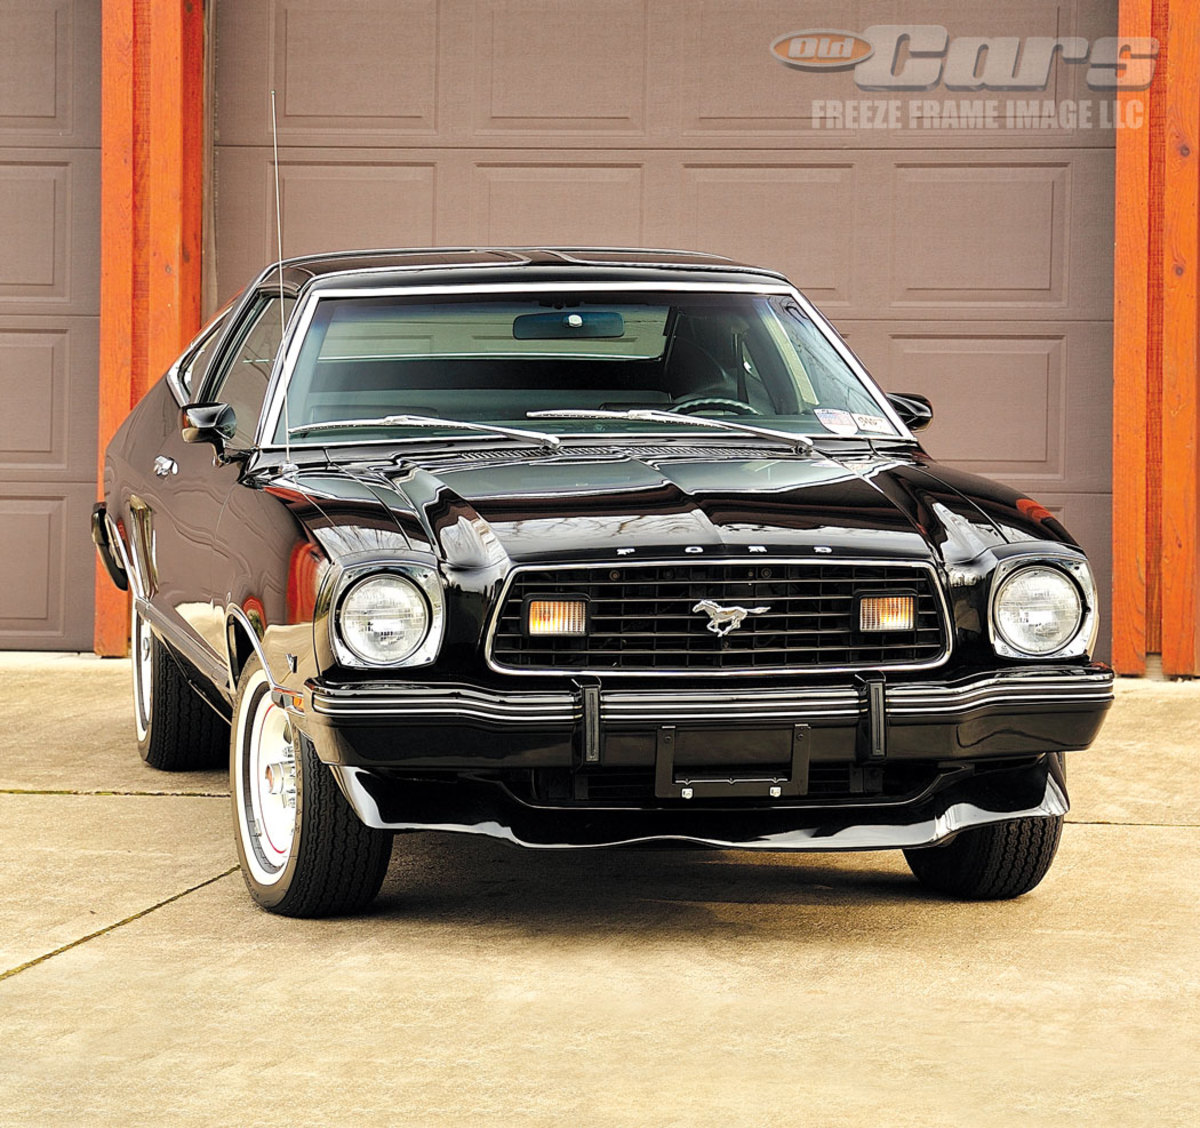 Car of the Week: 1978 Mustang II survivor - Old Cars Weekly